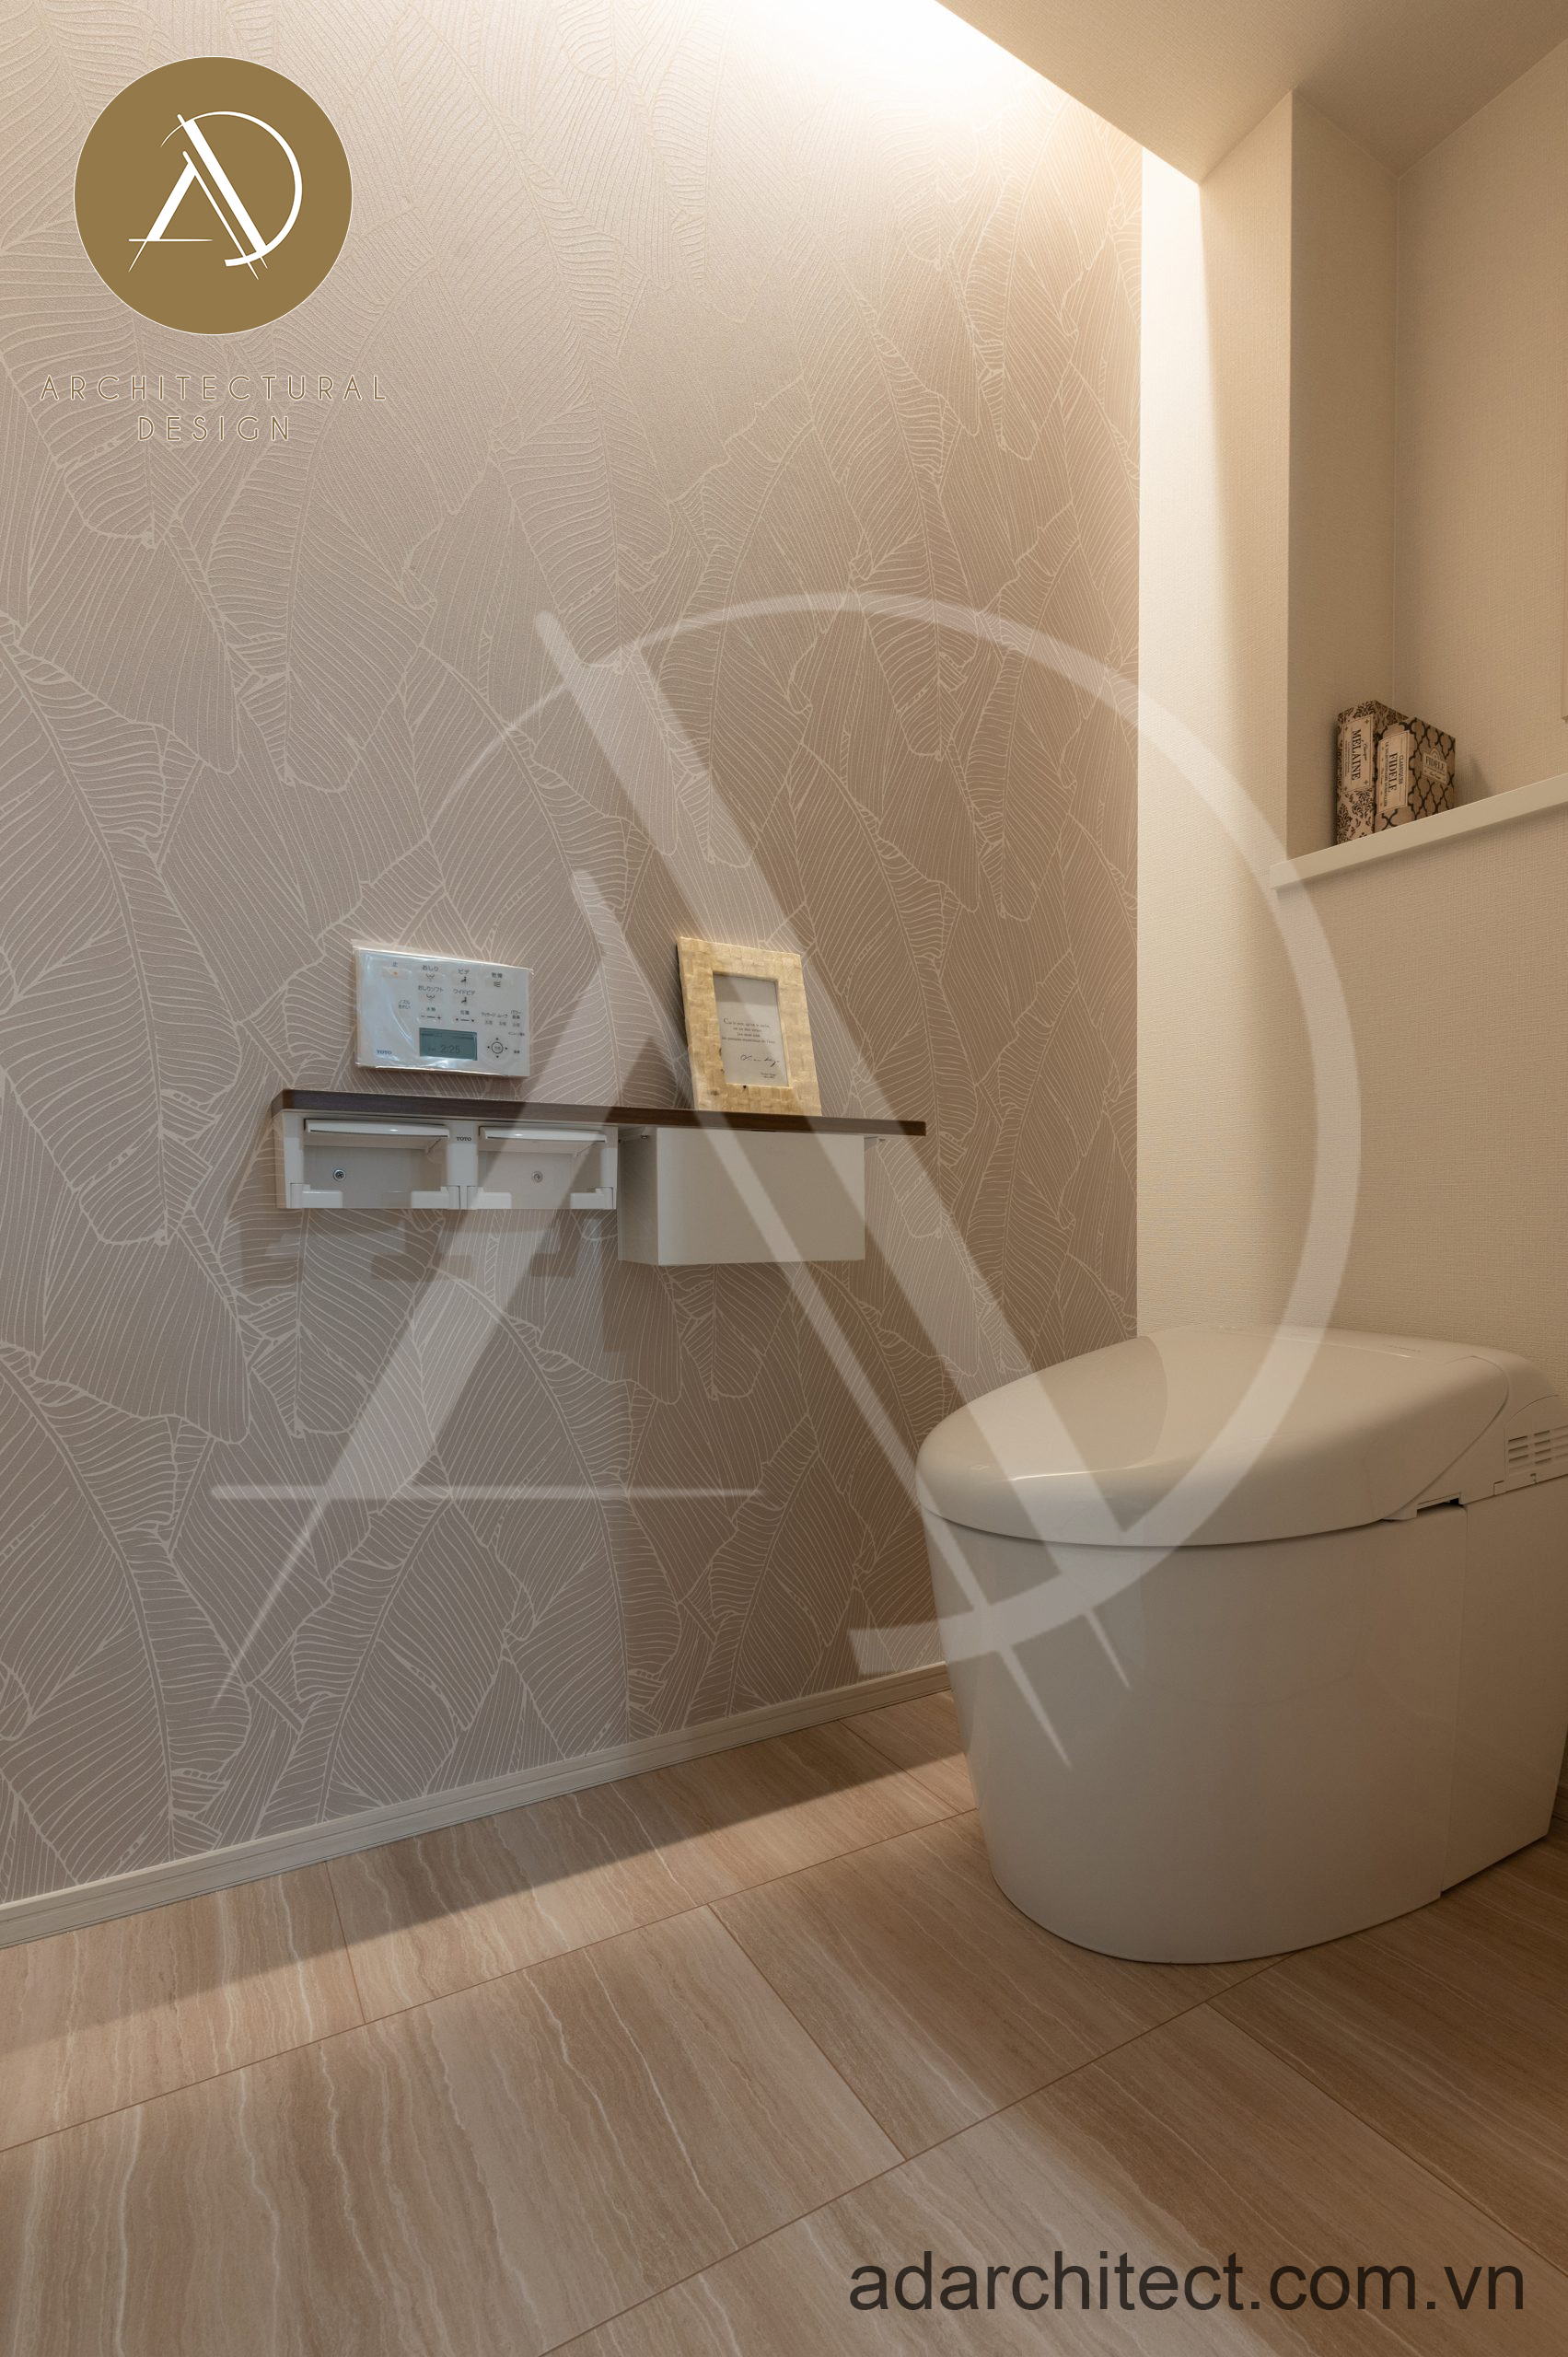 Sử dụng bồn vệ sinh thông minh cho nội thất nhà cấp 4 hiện đại đẹp